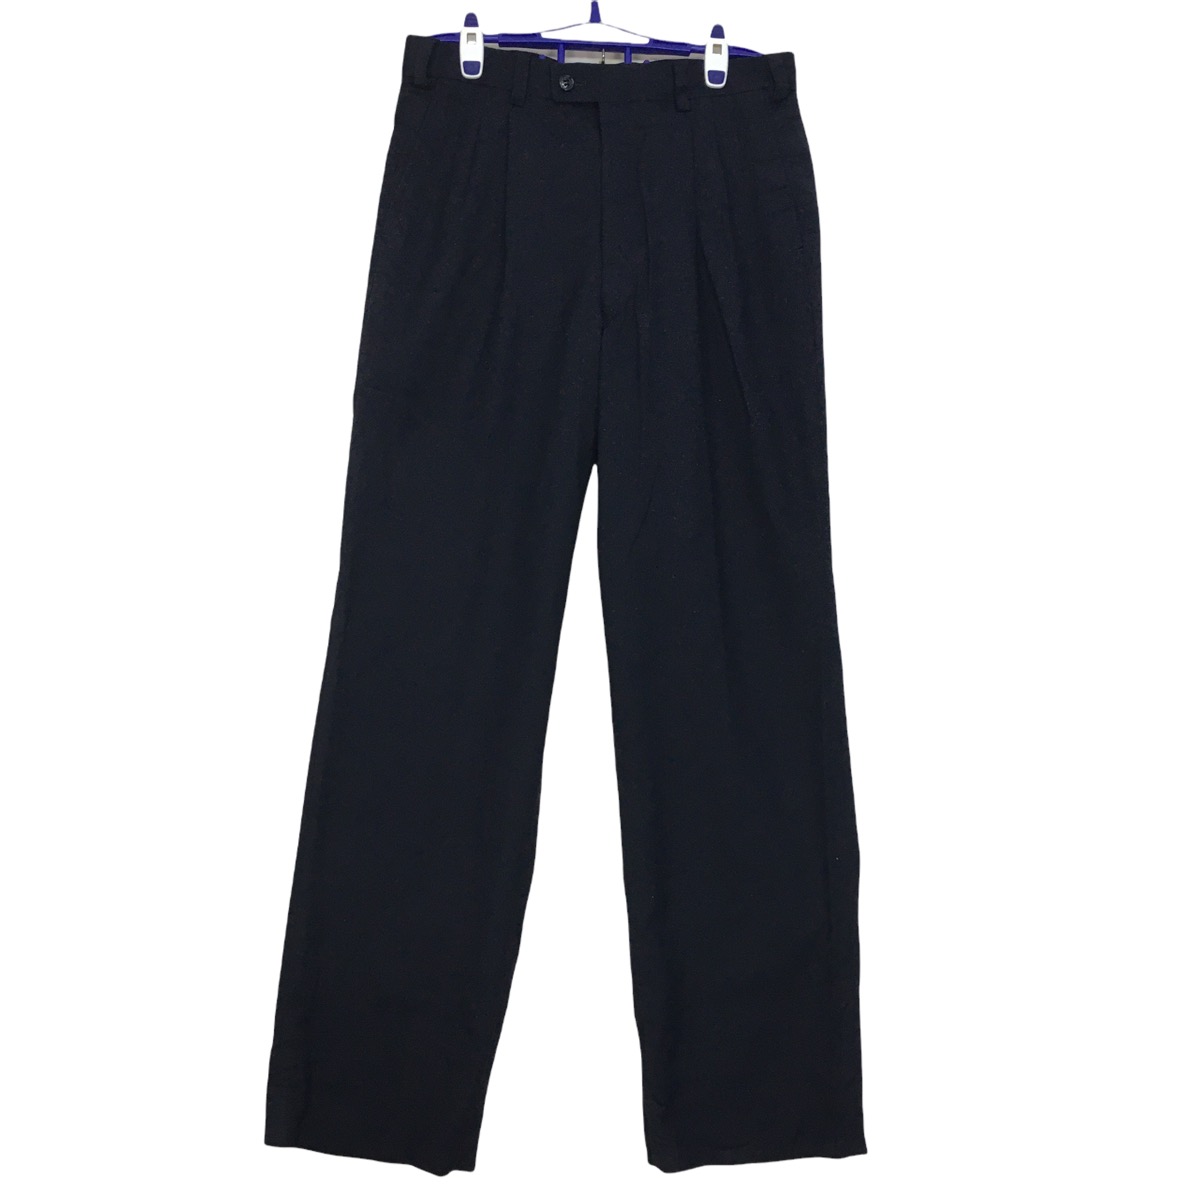 LANVIN CLASSIQUE Stretch Waist Long Pants Trousers Formal - 1